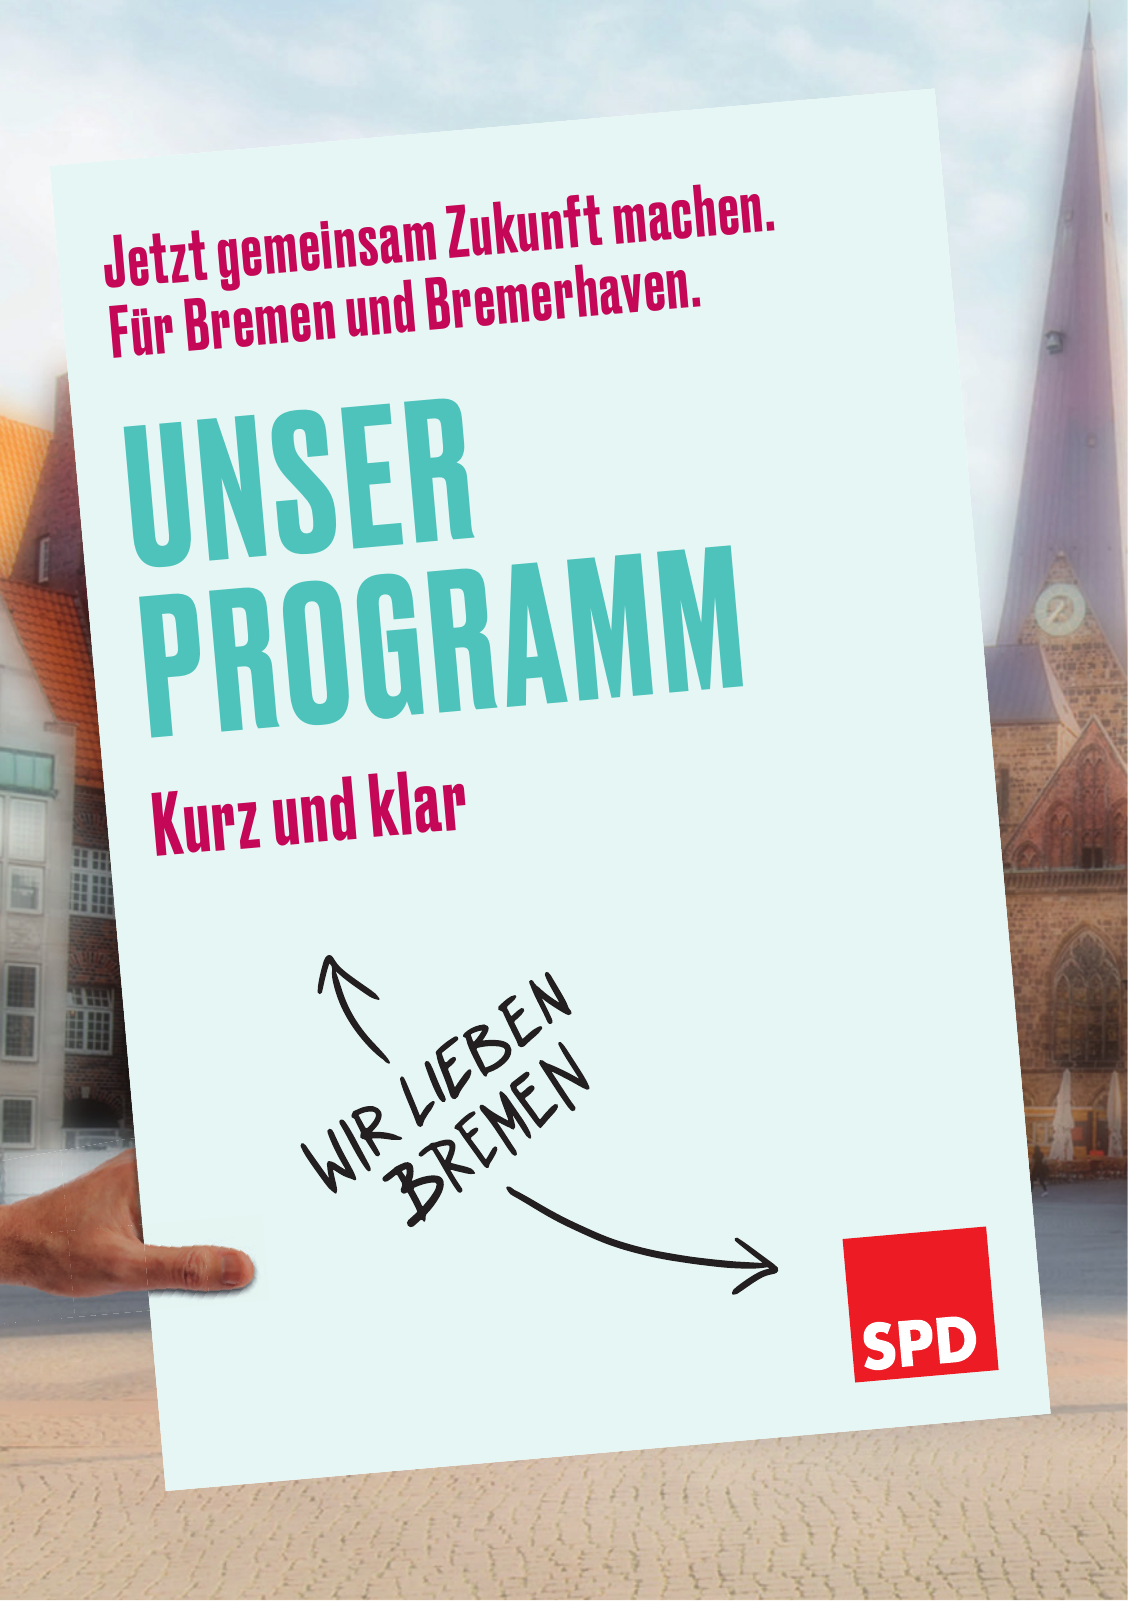 Vorschau SPD Kurzwahlprogramm - April 2019 Seite 1